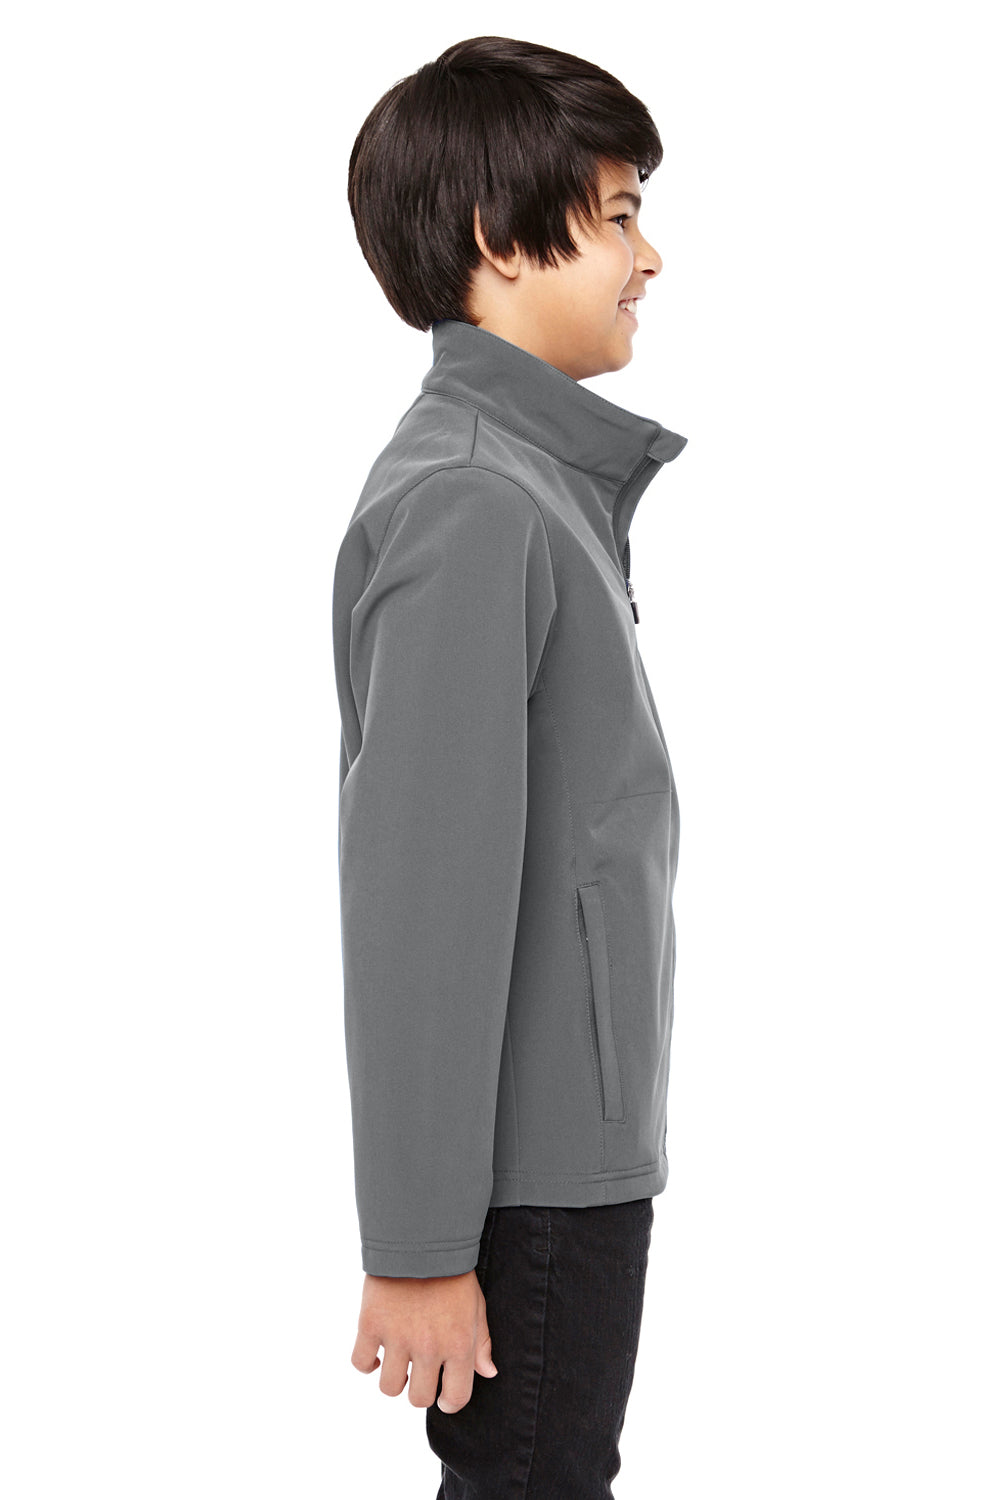 Team 365 TT80Y Youth Leader Waterproof Full Zip Jacket Graphite Grey Side